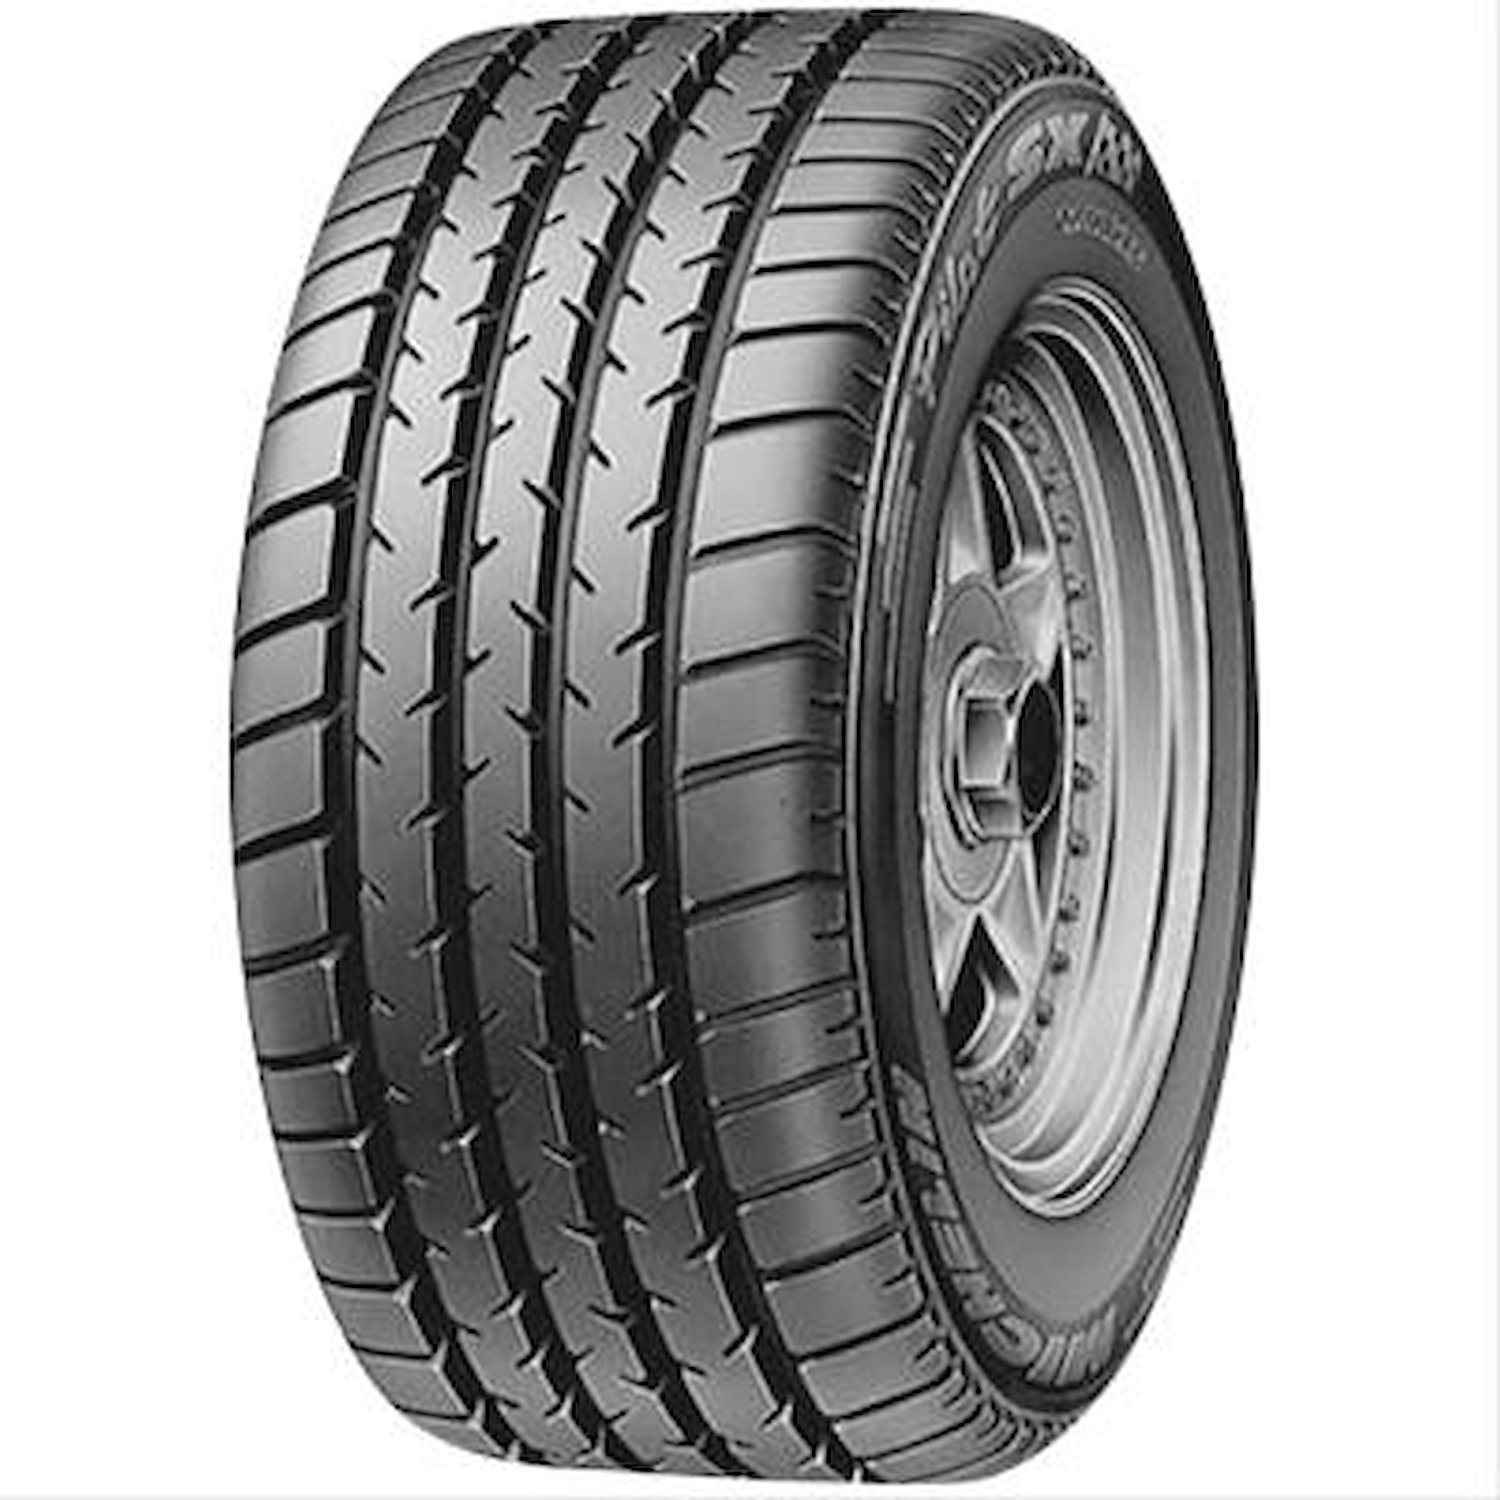 556104 Tire, Michelin SX MXX3 N2, 245/45ZR16 94Y